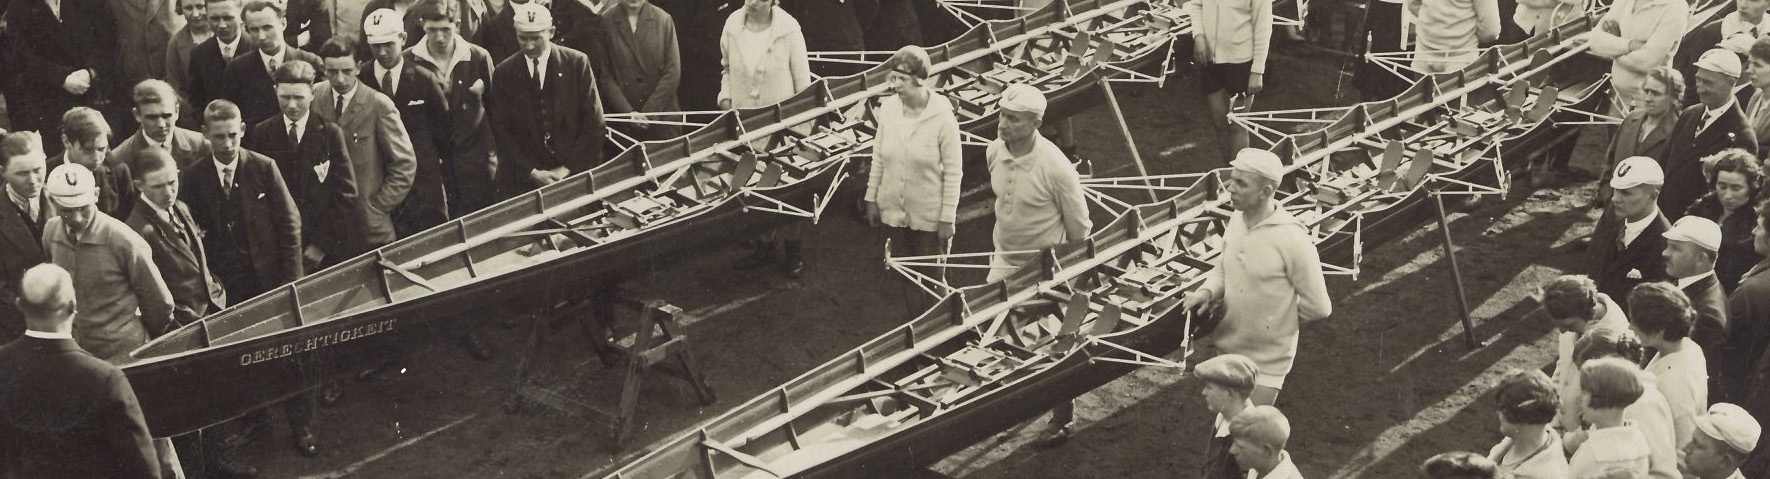 historische Aufnahme, zwei Vierer Skullboote mit Vereinsmitgliedern